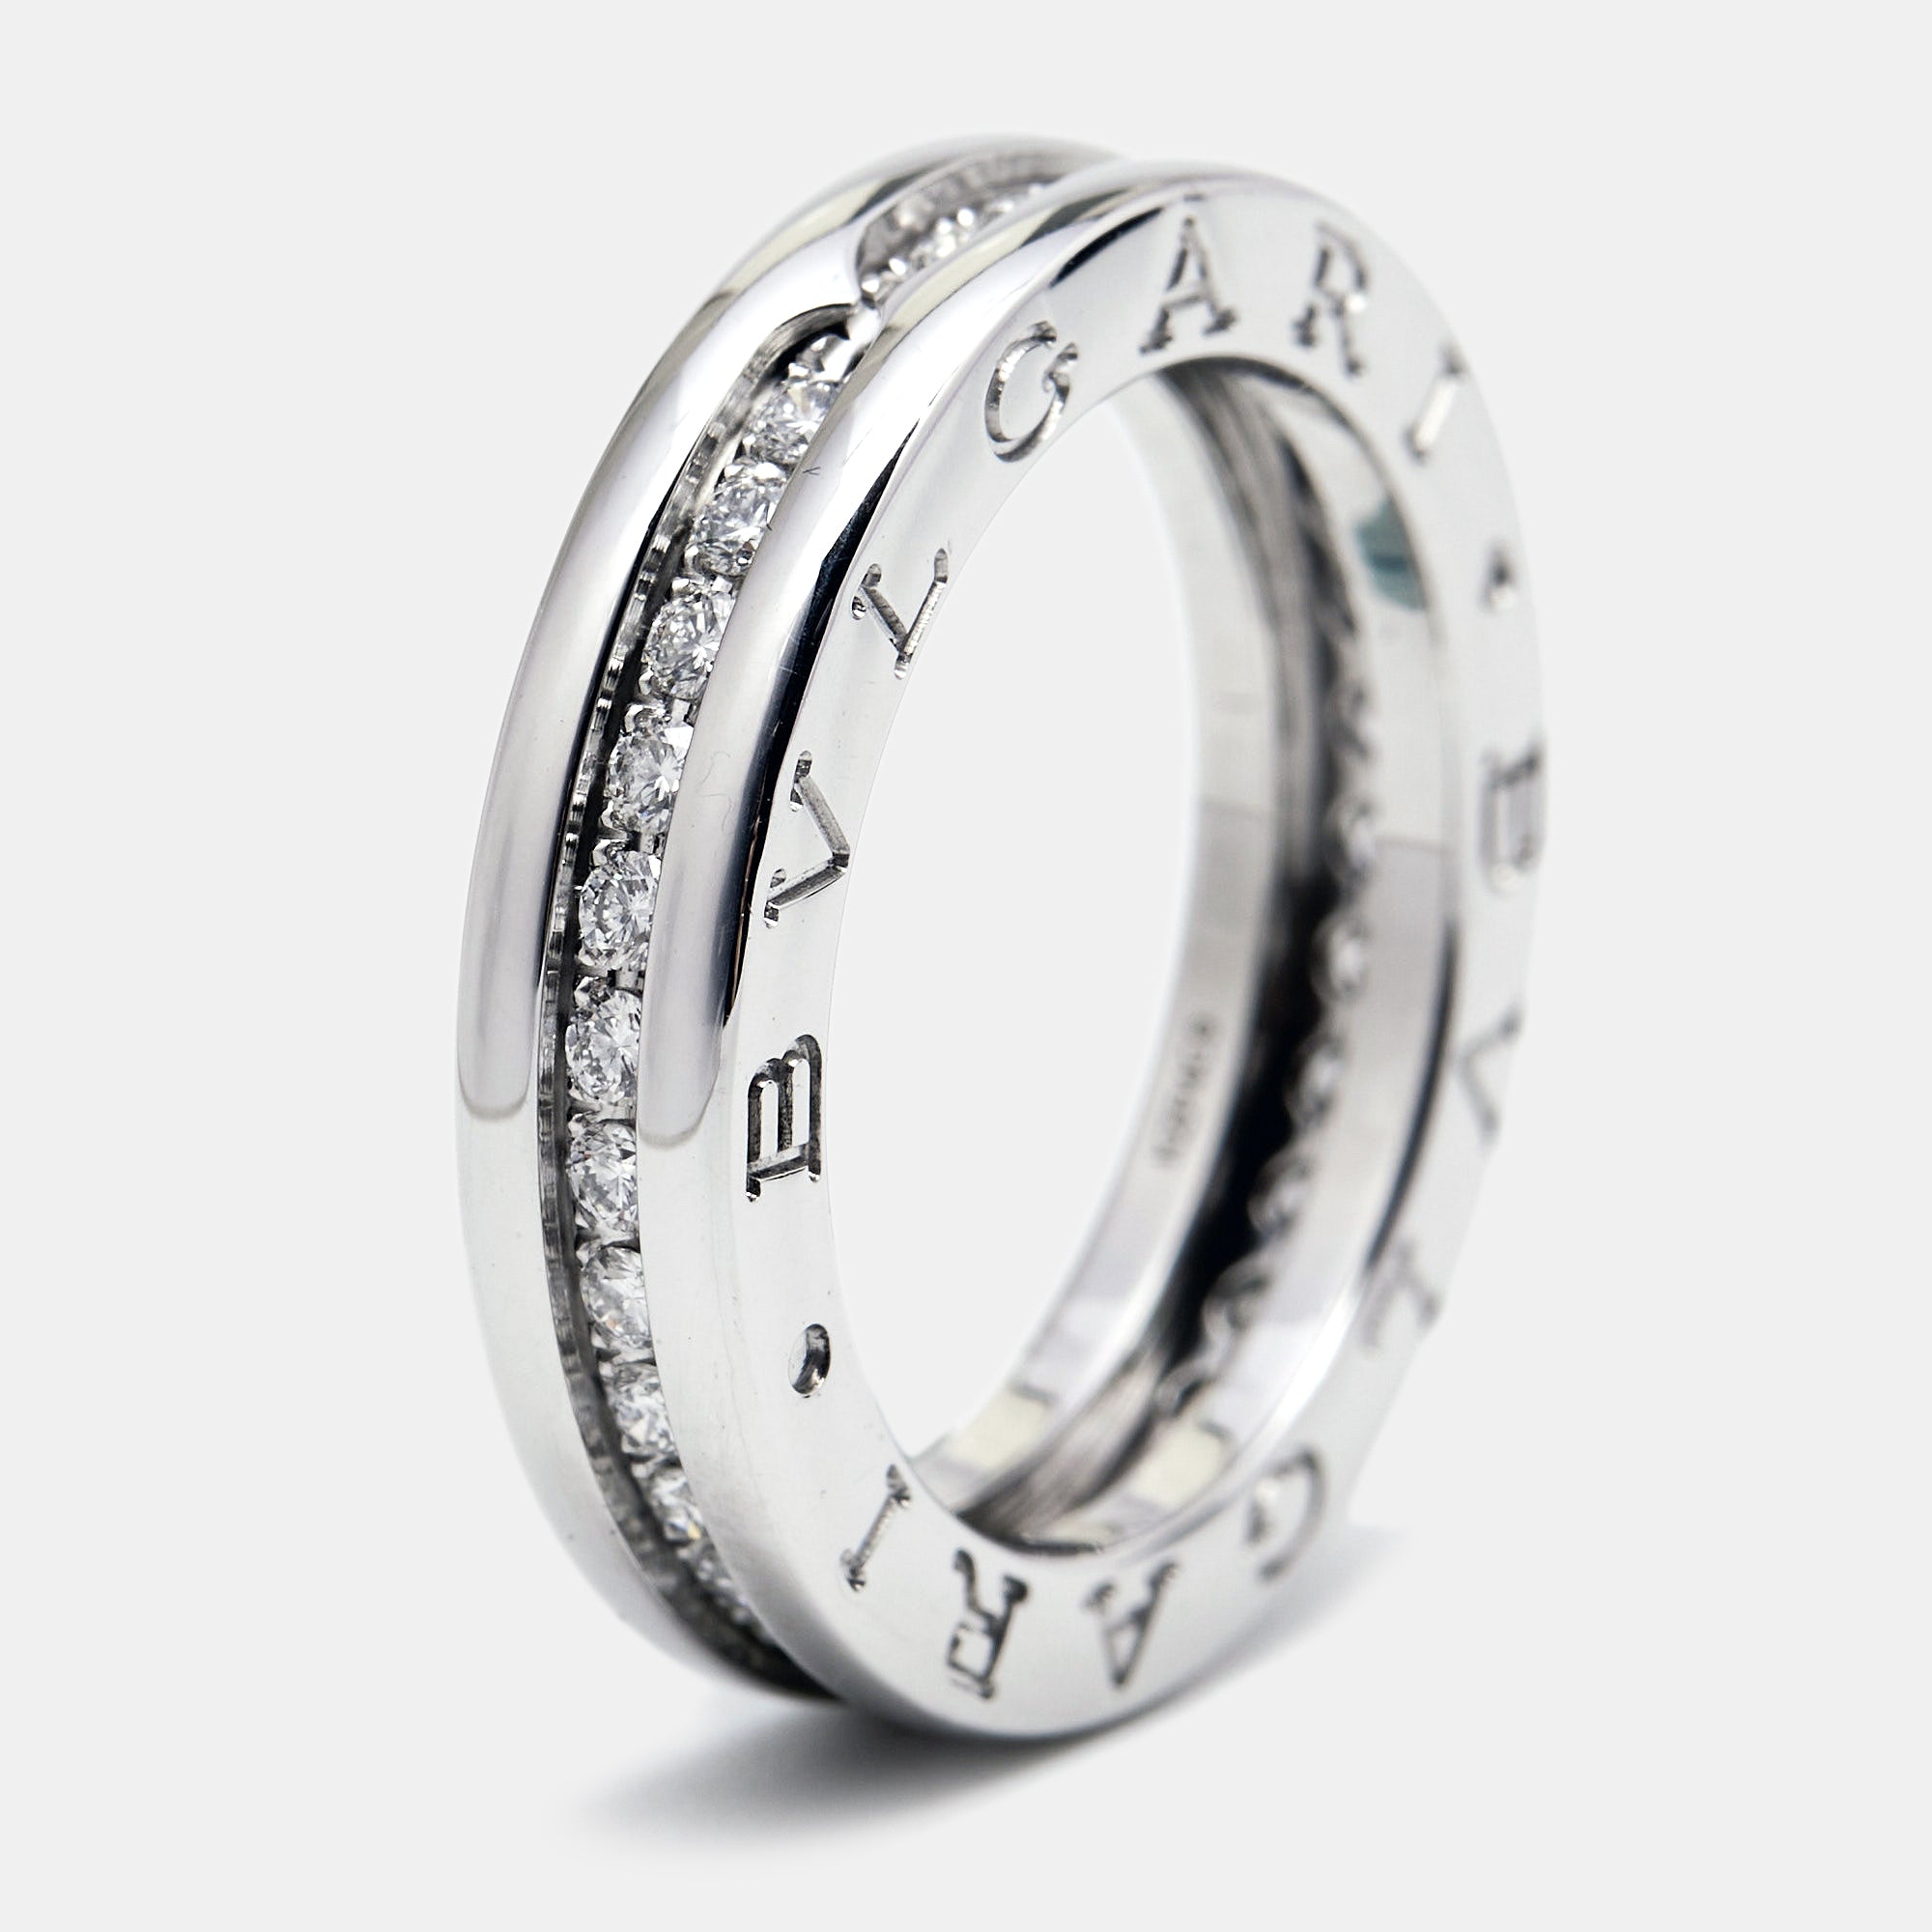 Bvlgari  Diamond 18k White Gold Band Ring Size 50